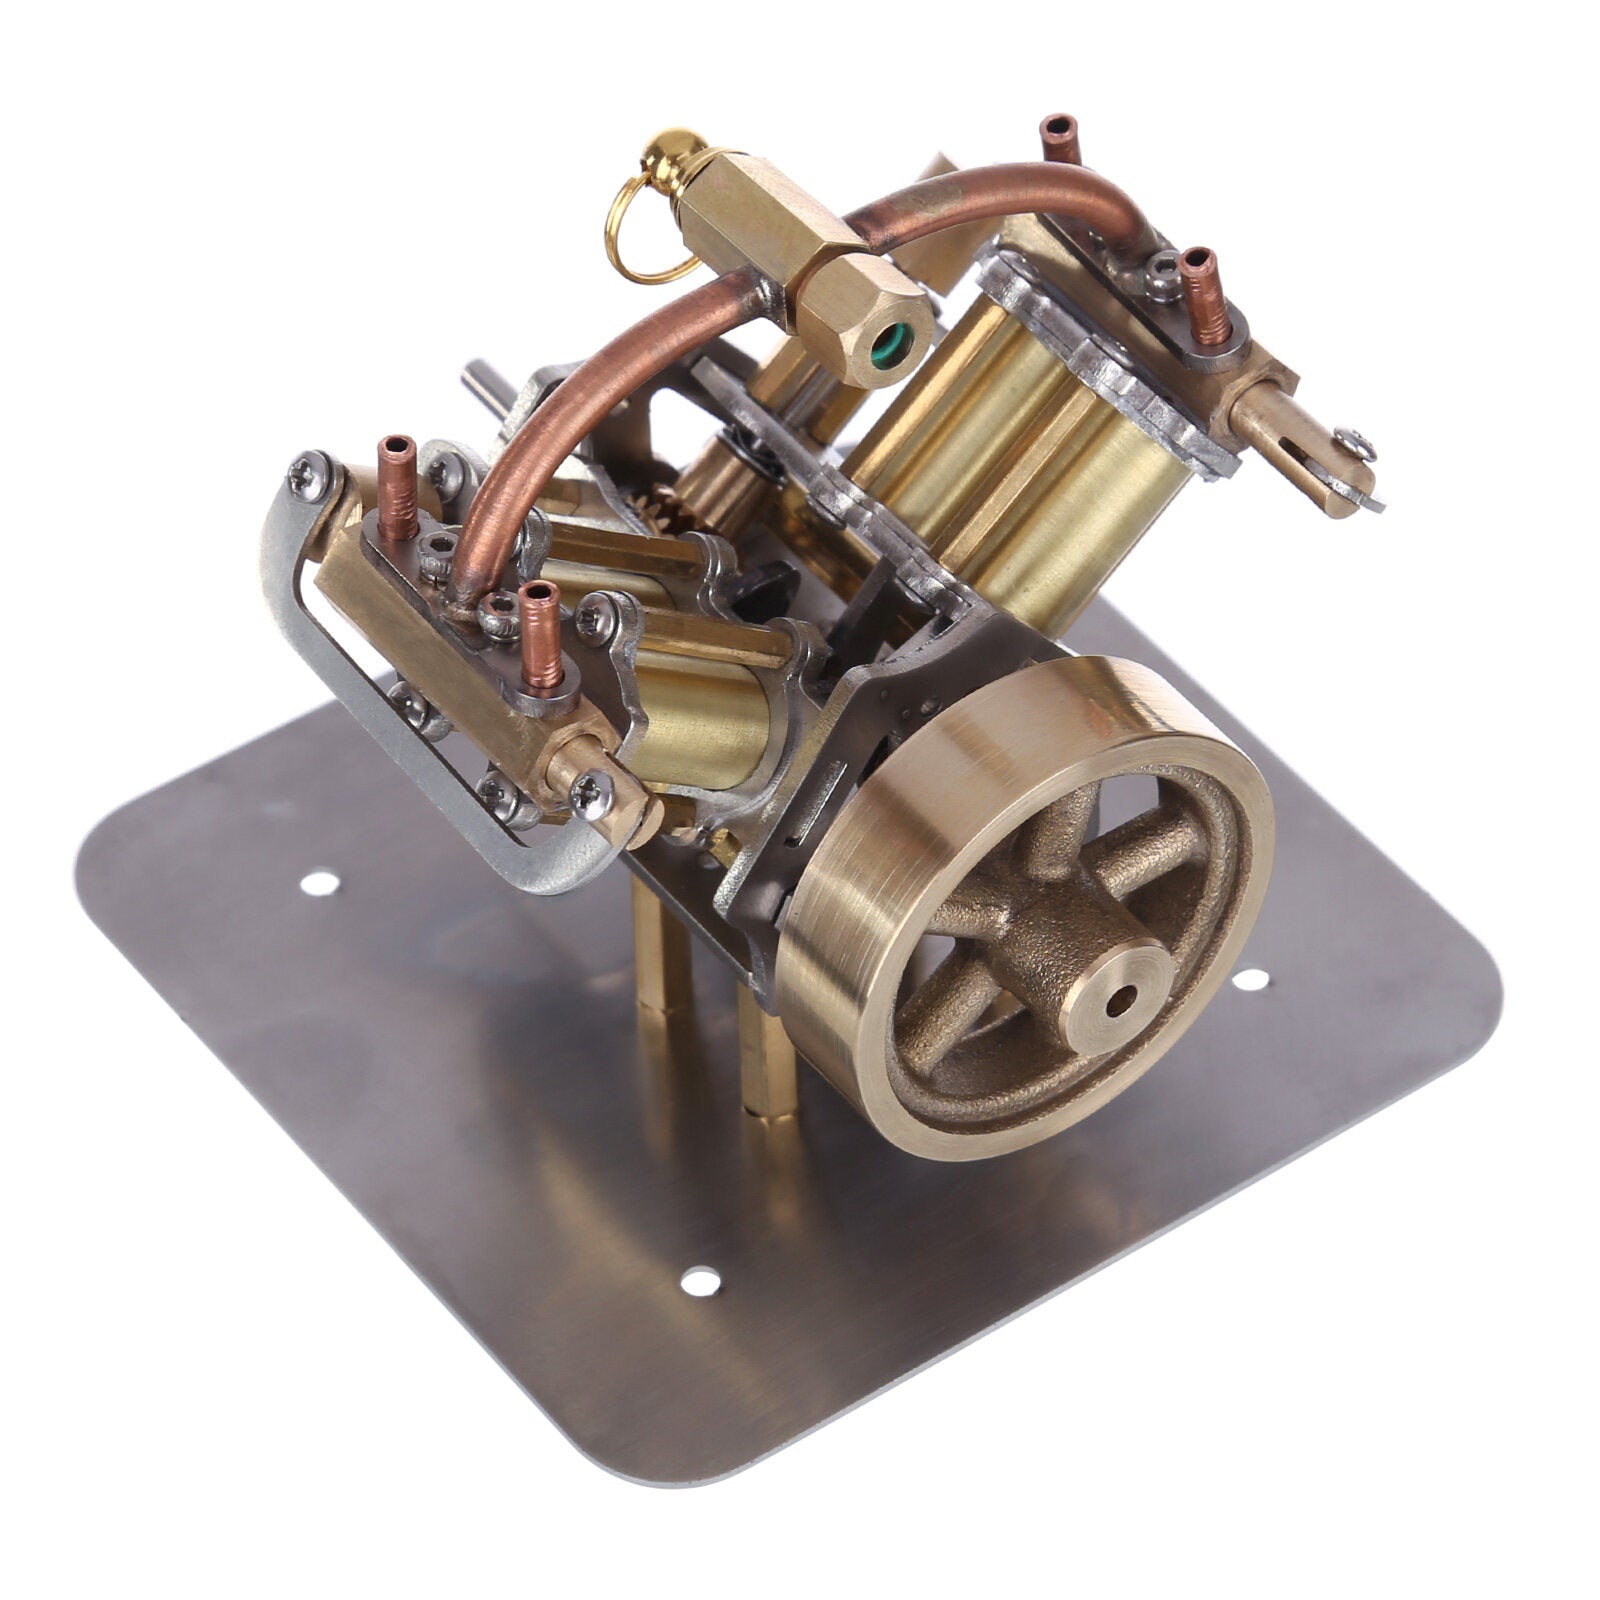 Miniatur-Dampfmaschine V4, Modell einer Miniatur-Dampfmaschine 7